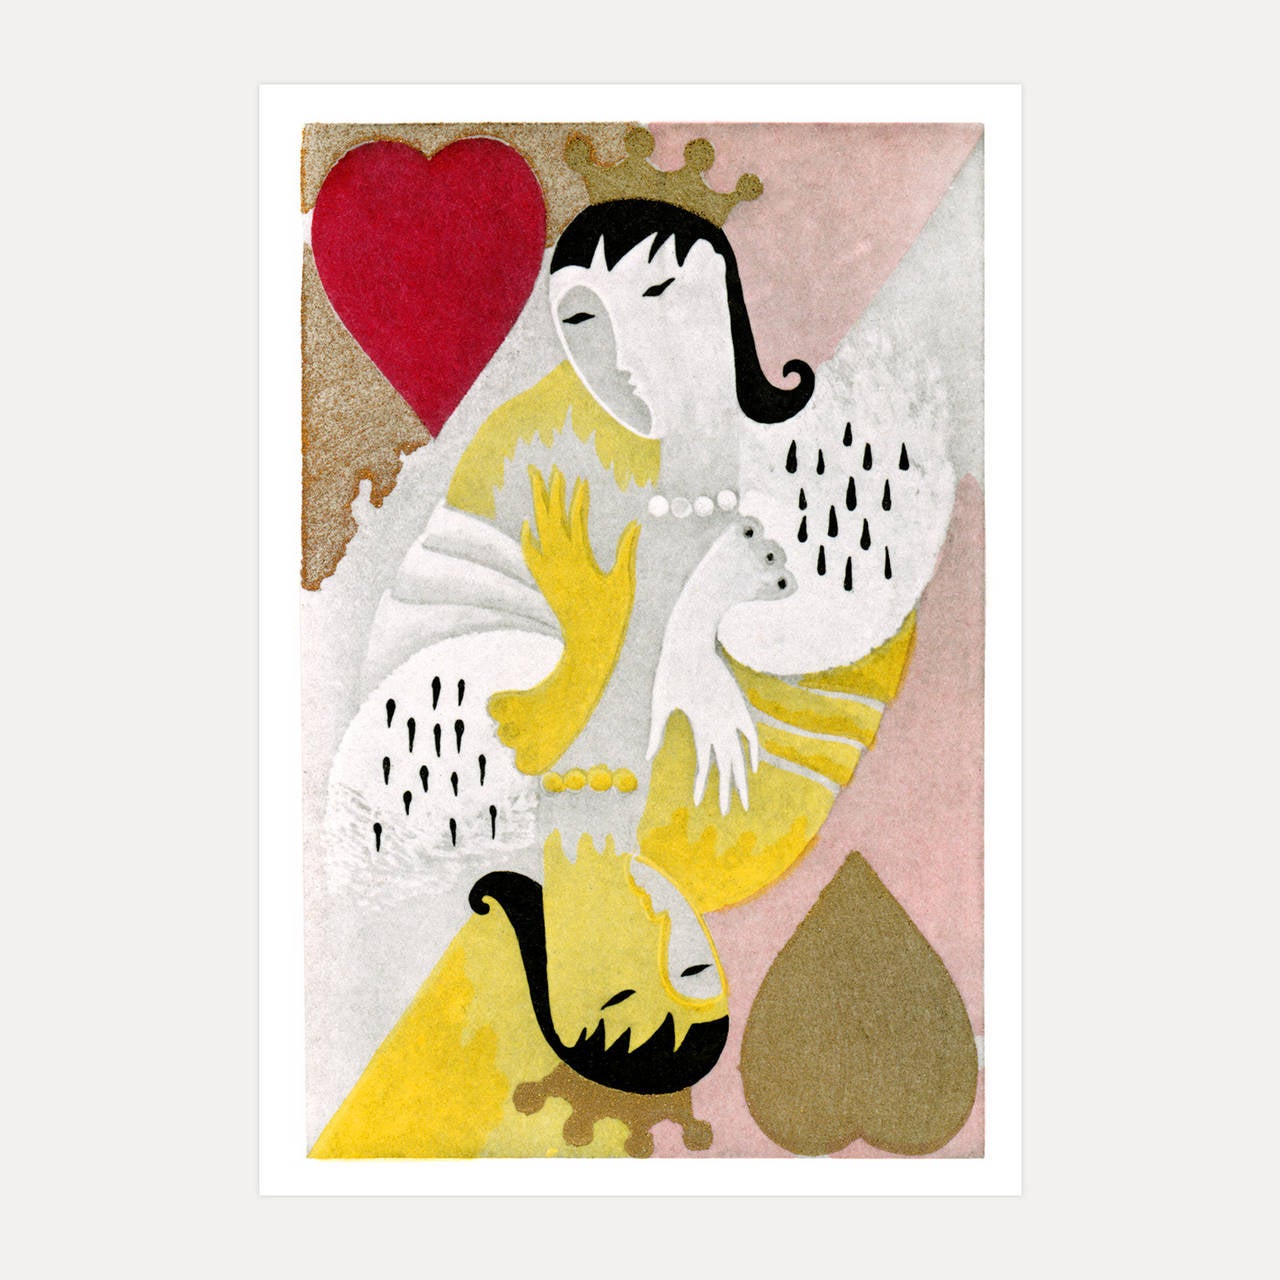 Max Vibert Figurative Print - Queen of Hearts, Paris c1928